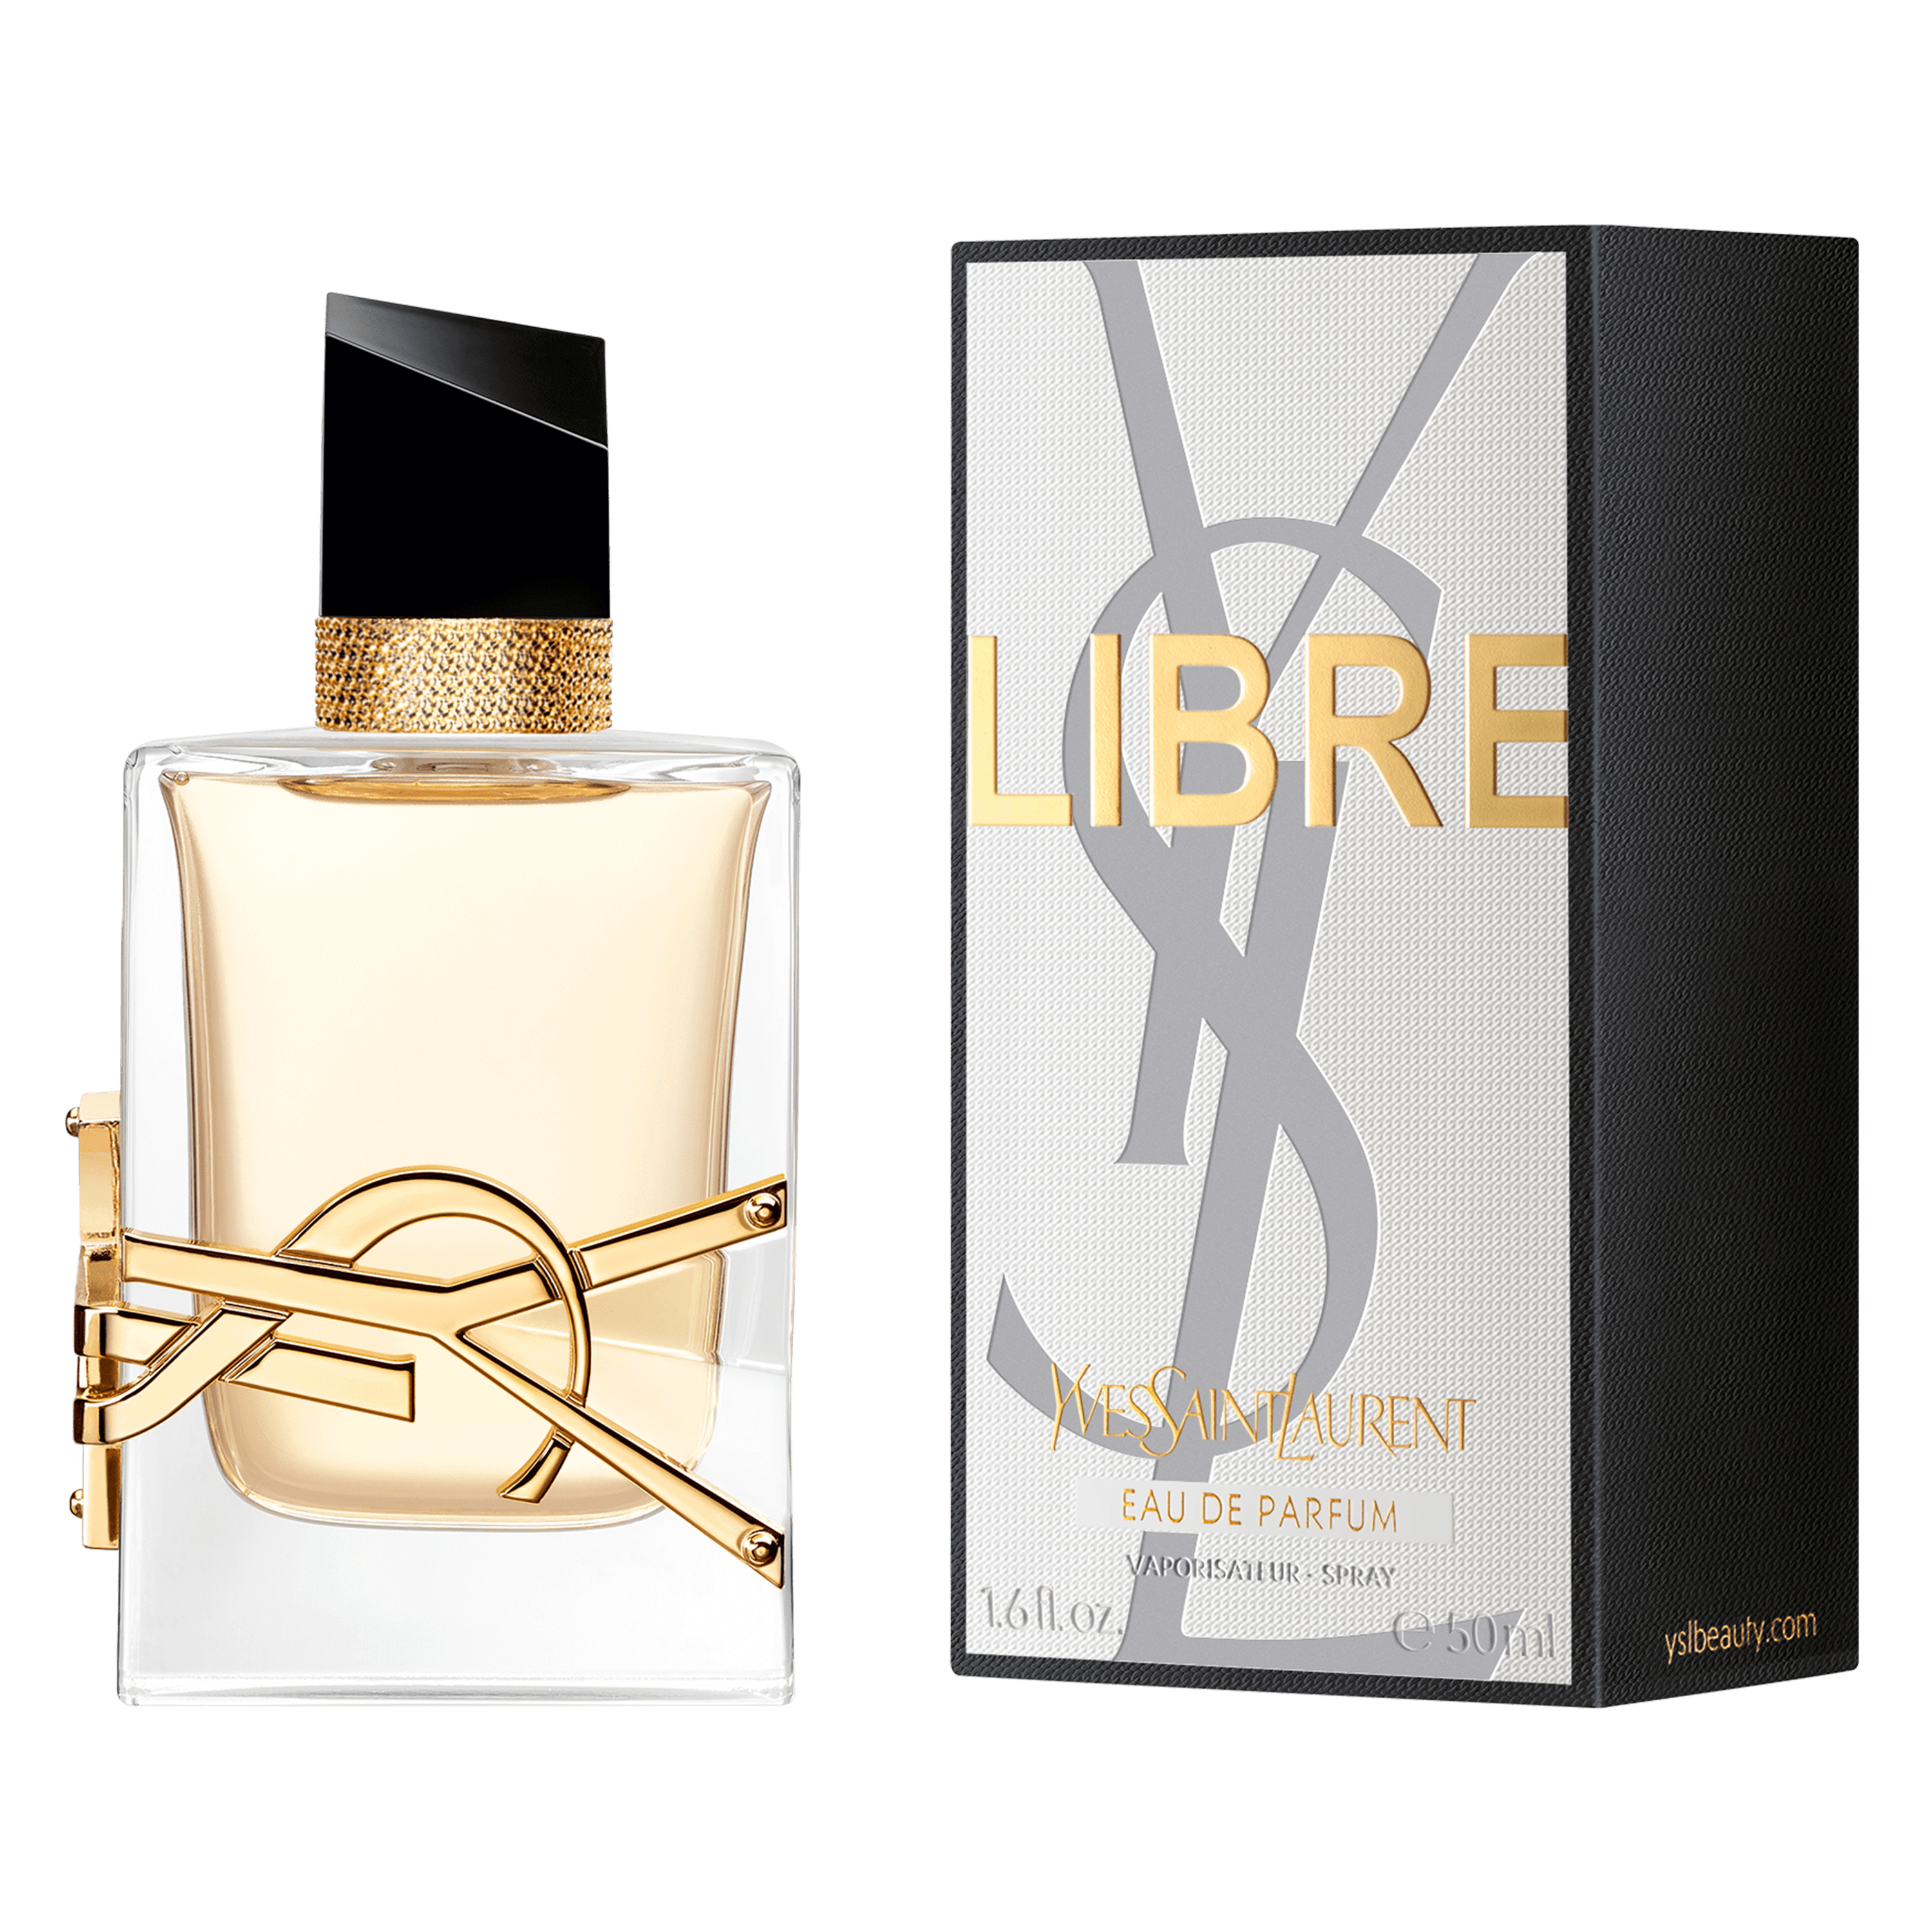 L'Oréal Yves Saint Laurent launches feminine fragrance Libre